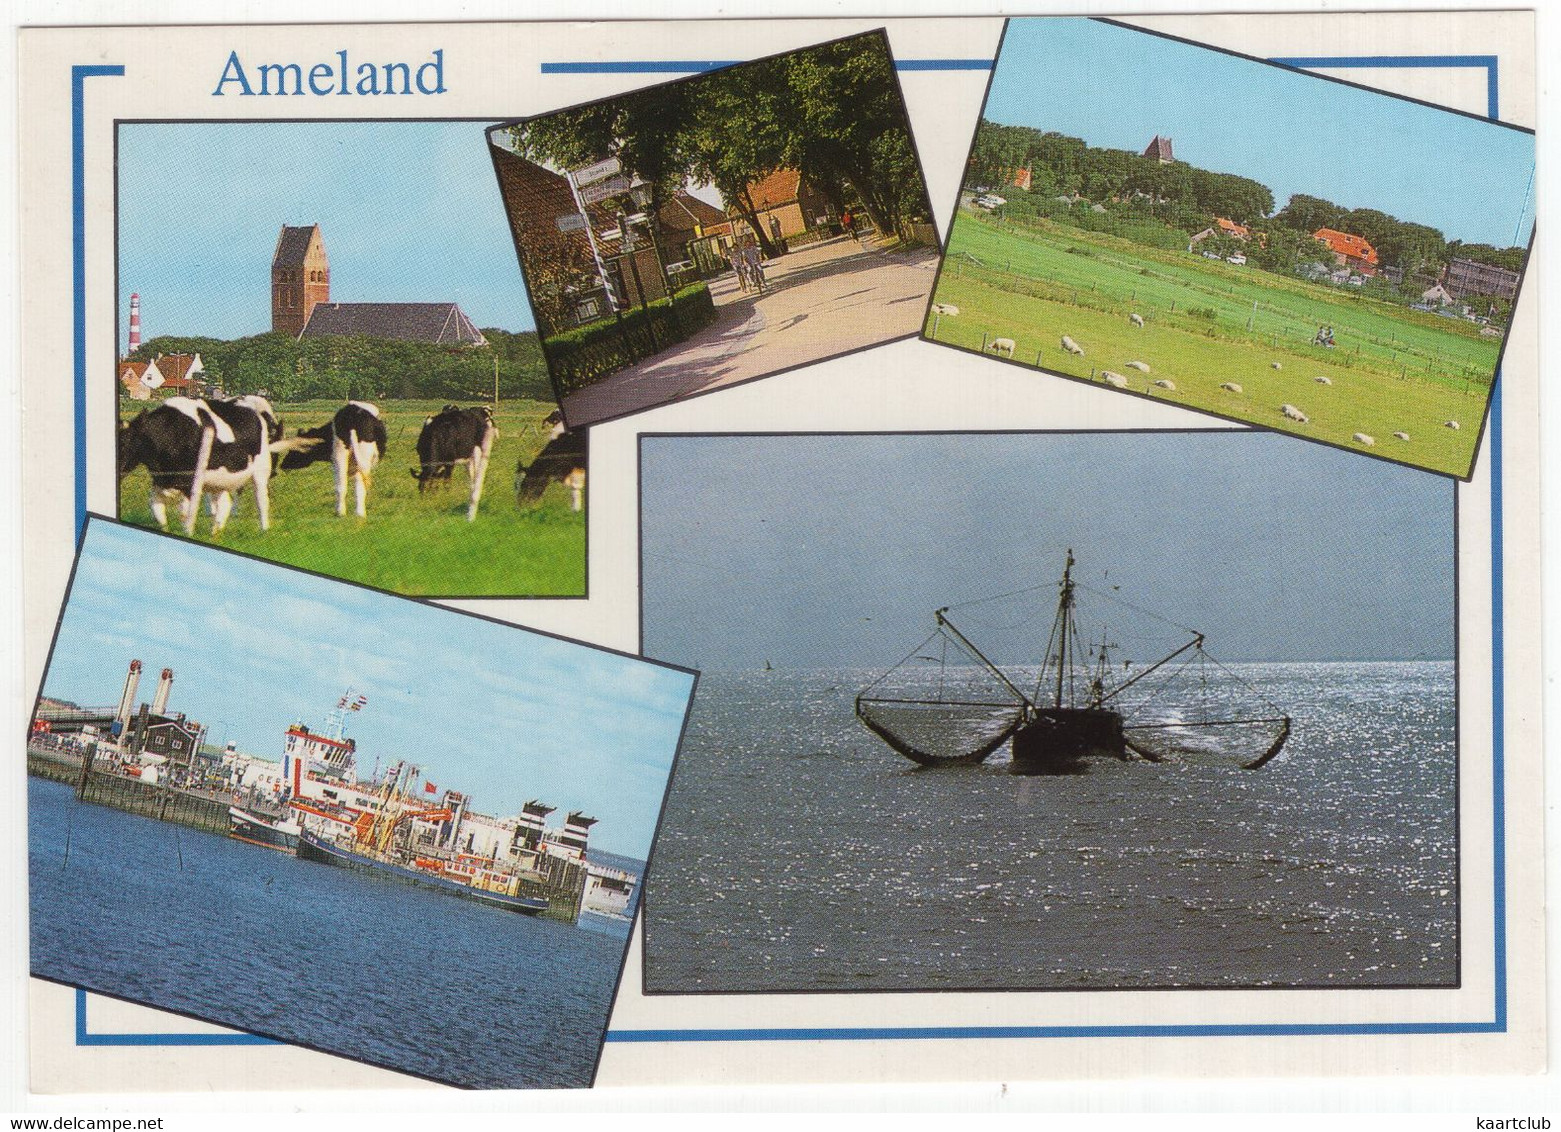 Ameland - (Wadden, Nederland) - Nr. AMD 37 - Vee, Vissersschepen - Ameland